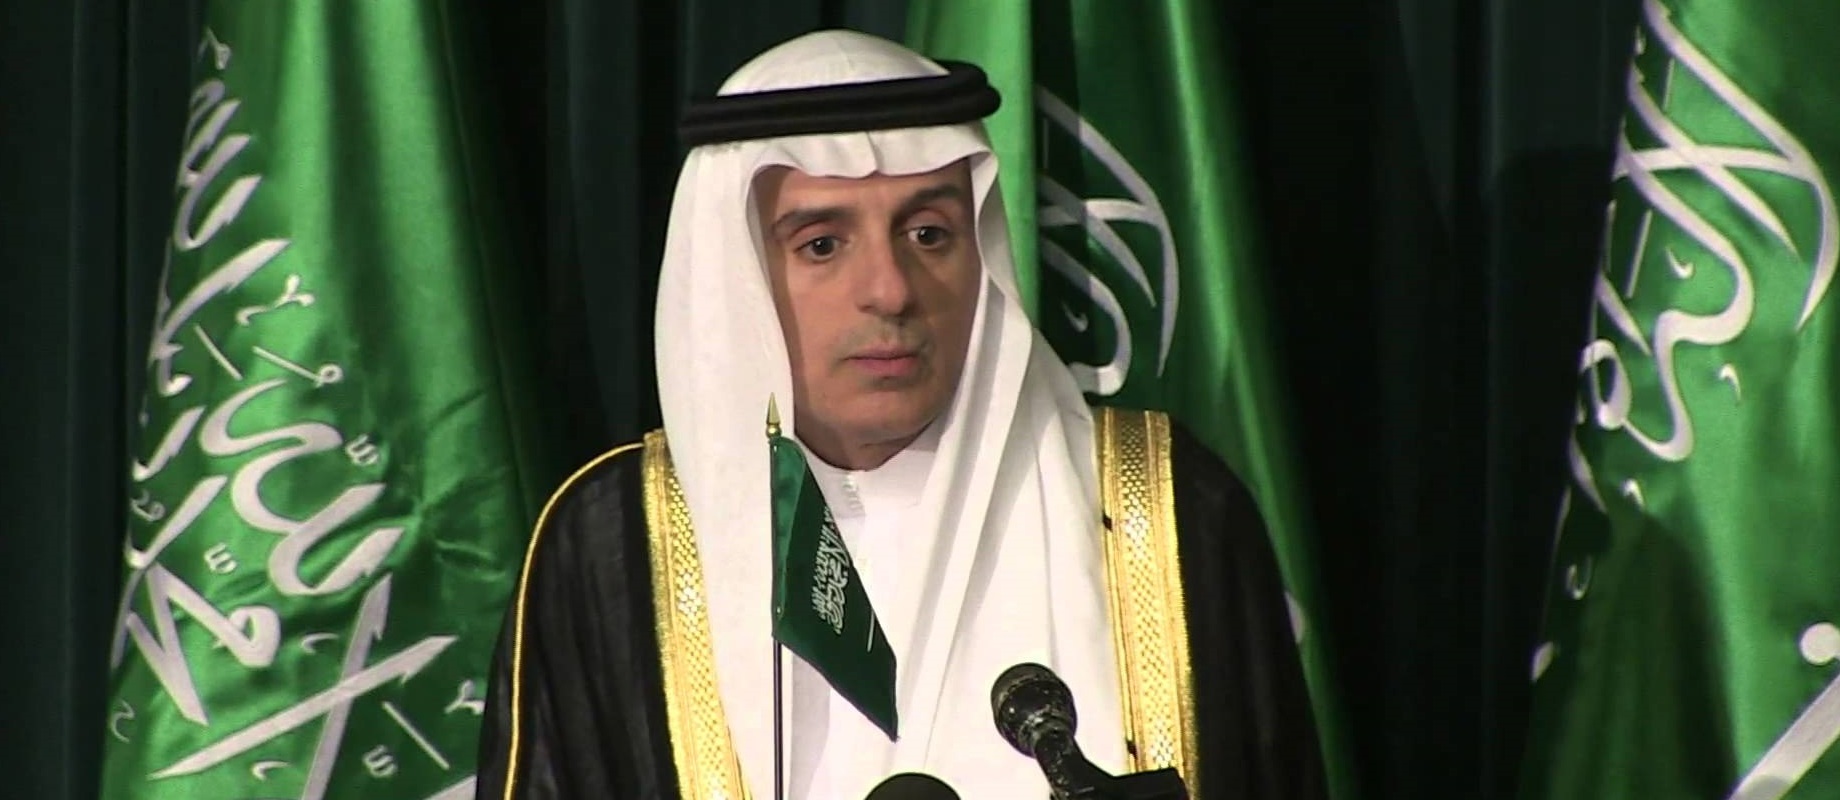 El régimen saudí no escatima esfuerzos para formar una alianza contra Irán